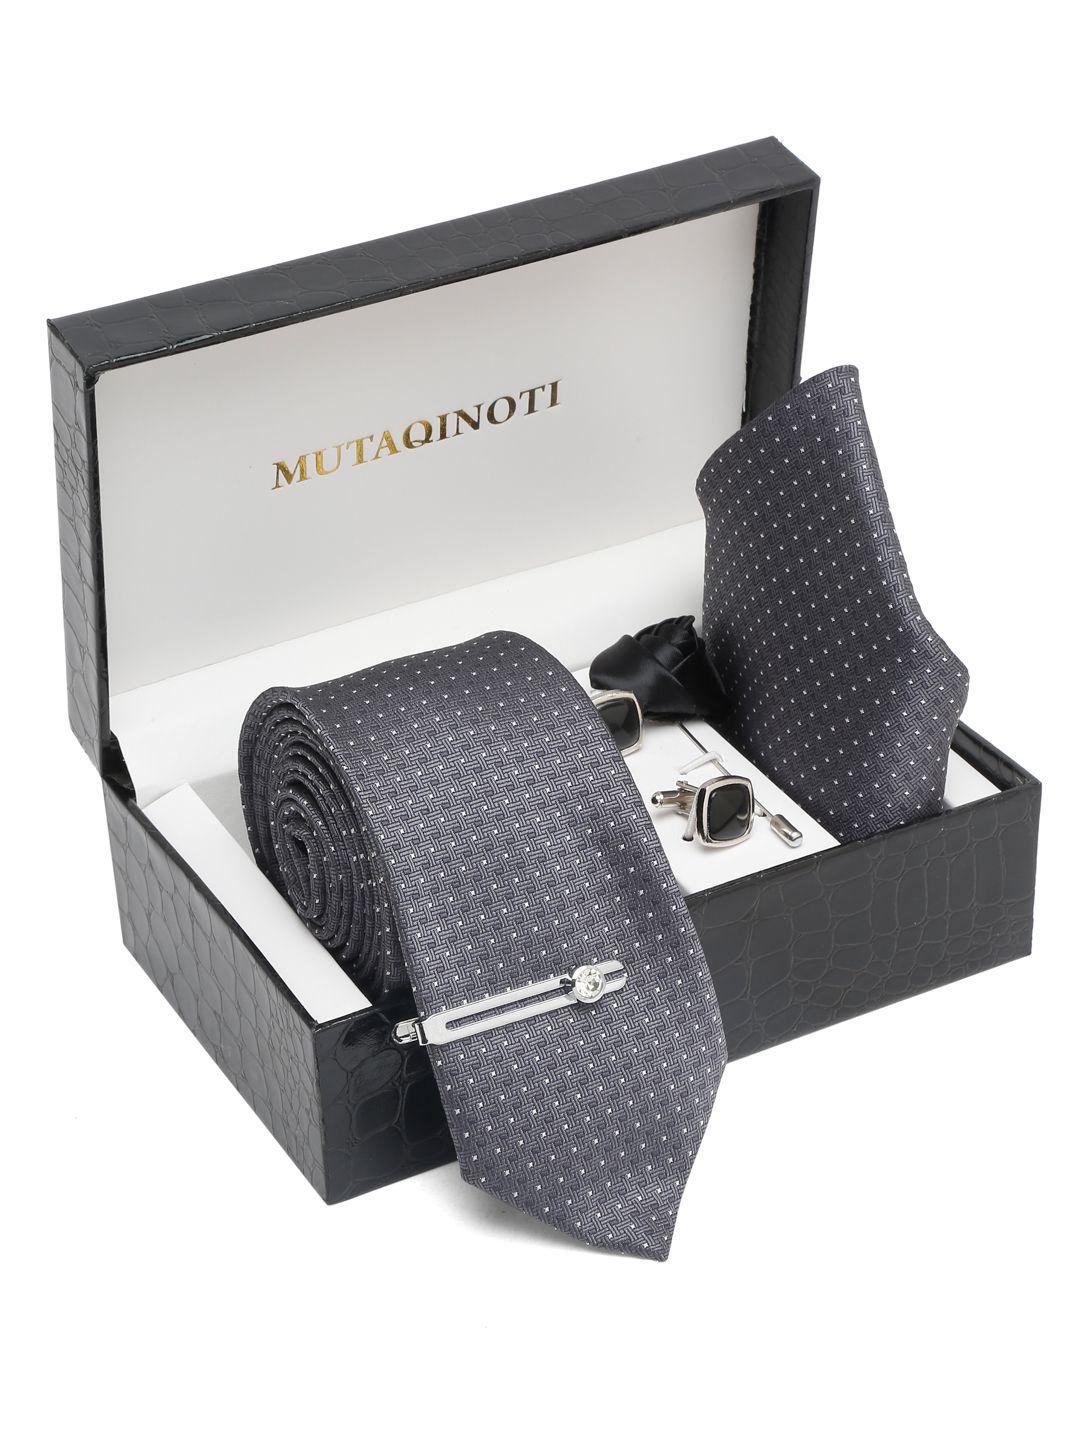 mutaqinoti men printed silk necktie accessory gift set